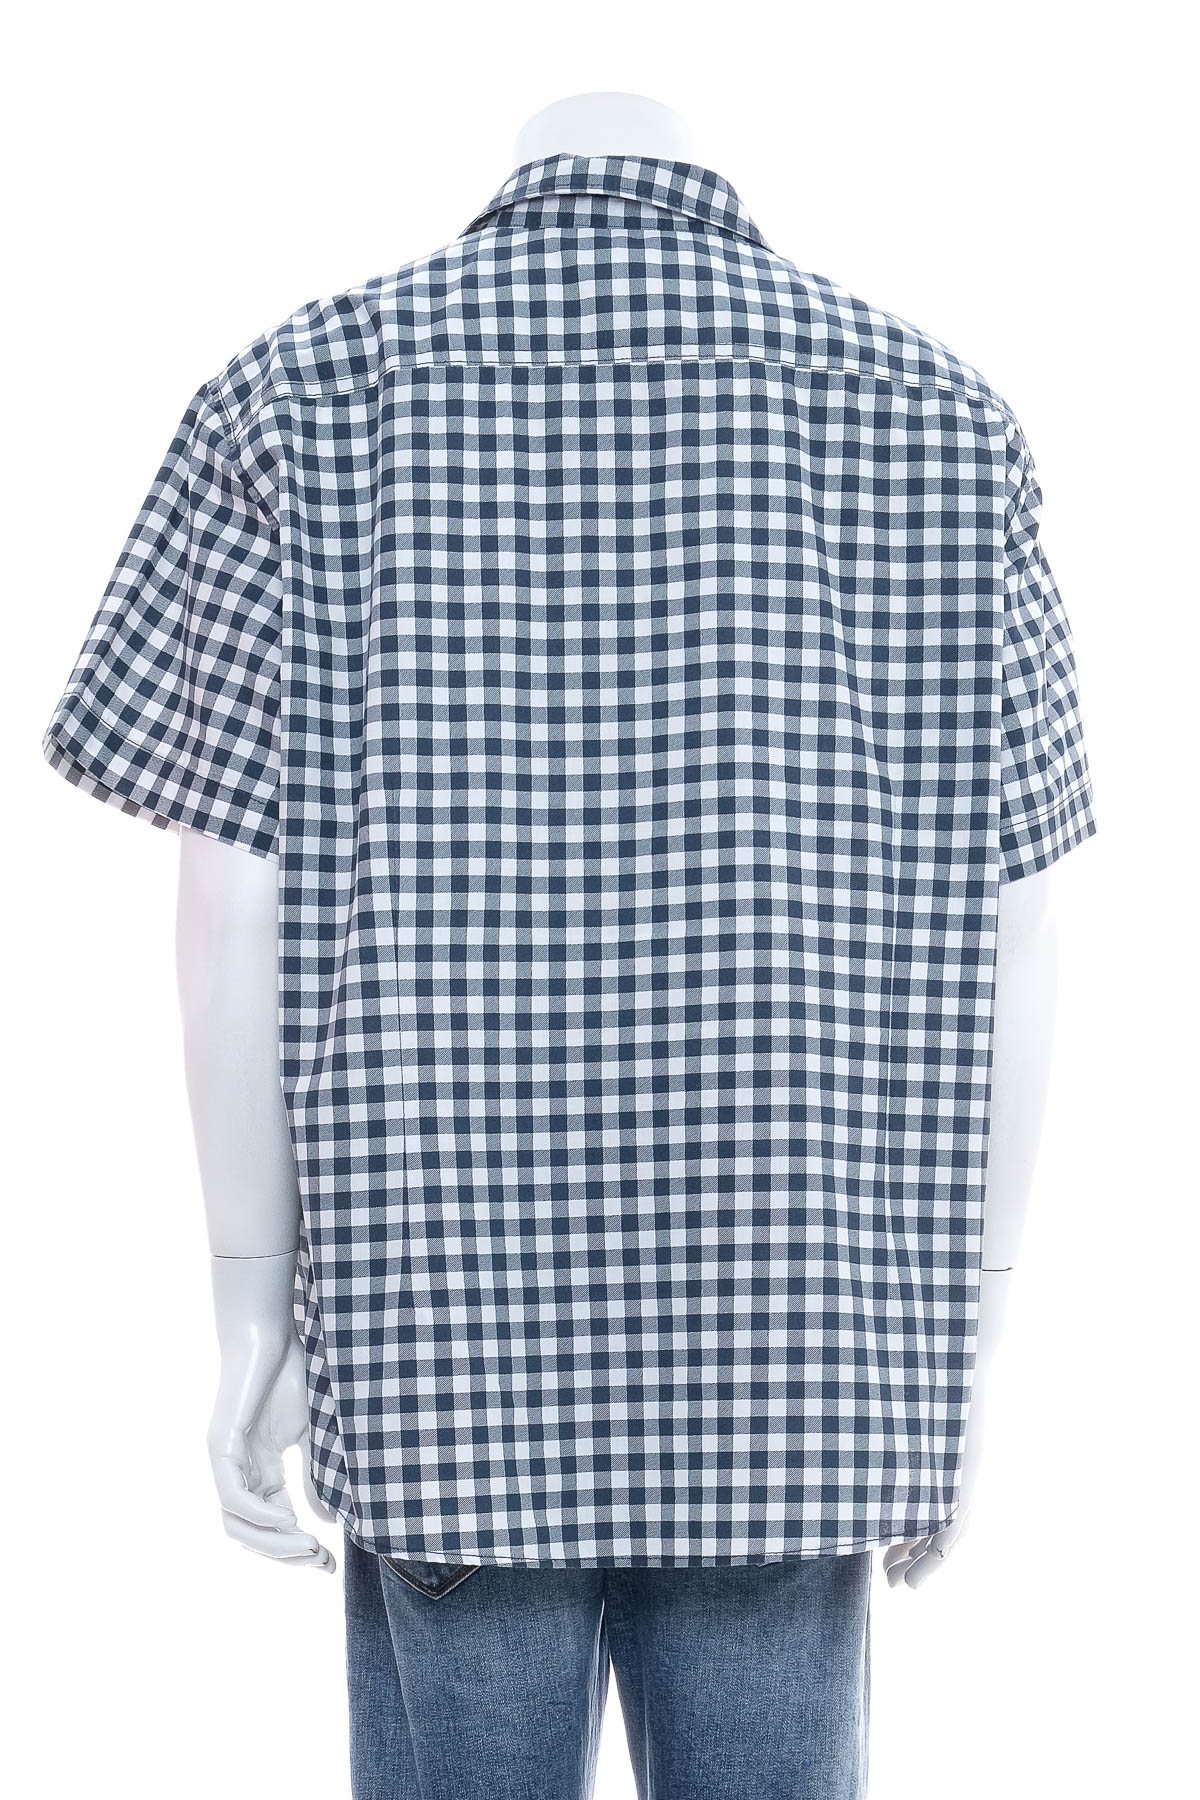 Ανδρικό πουκάμισο - Angelo Litrico - 1